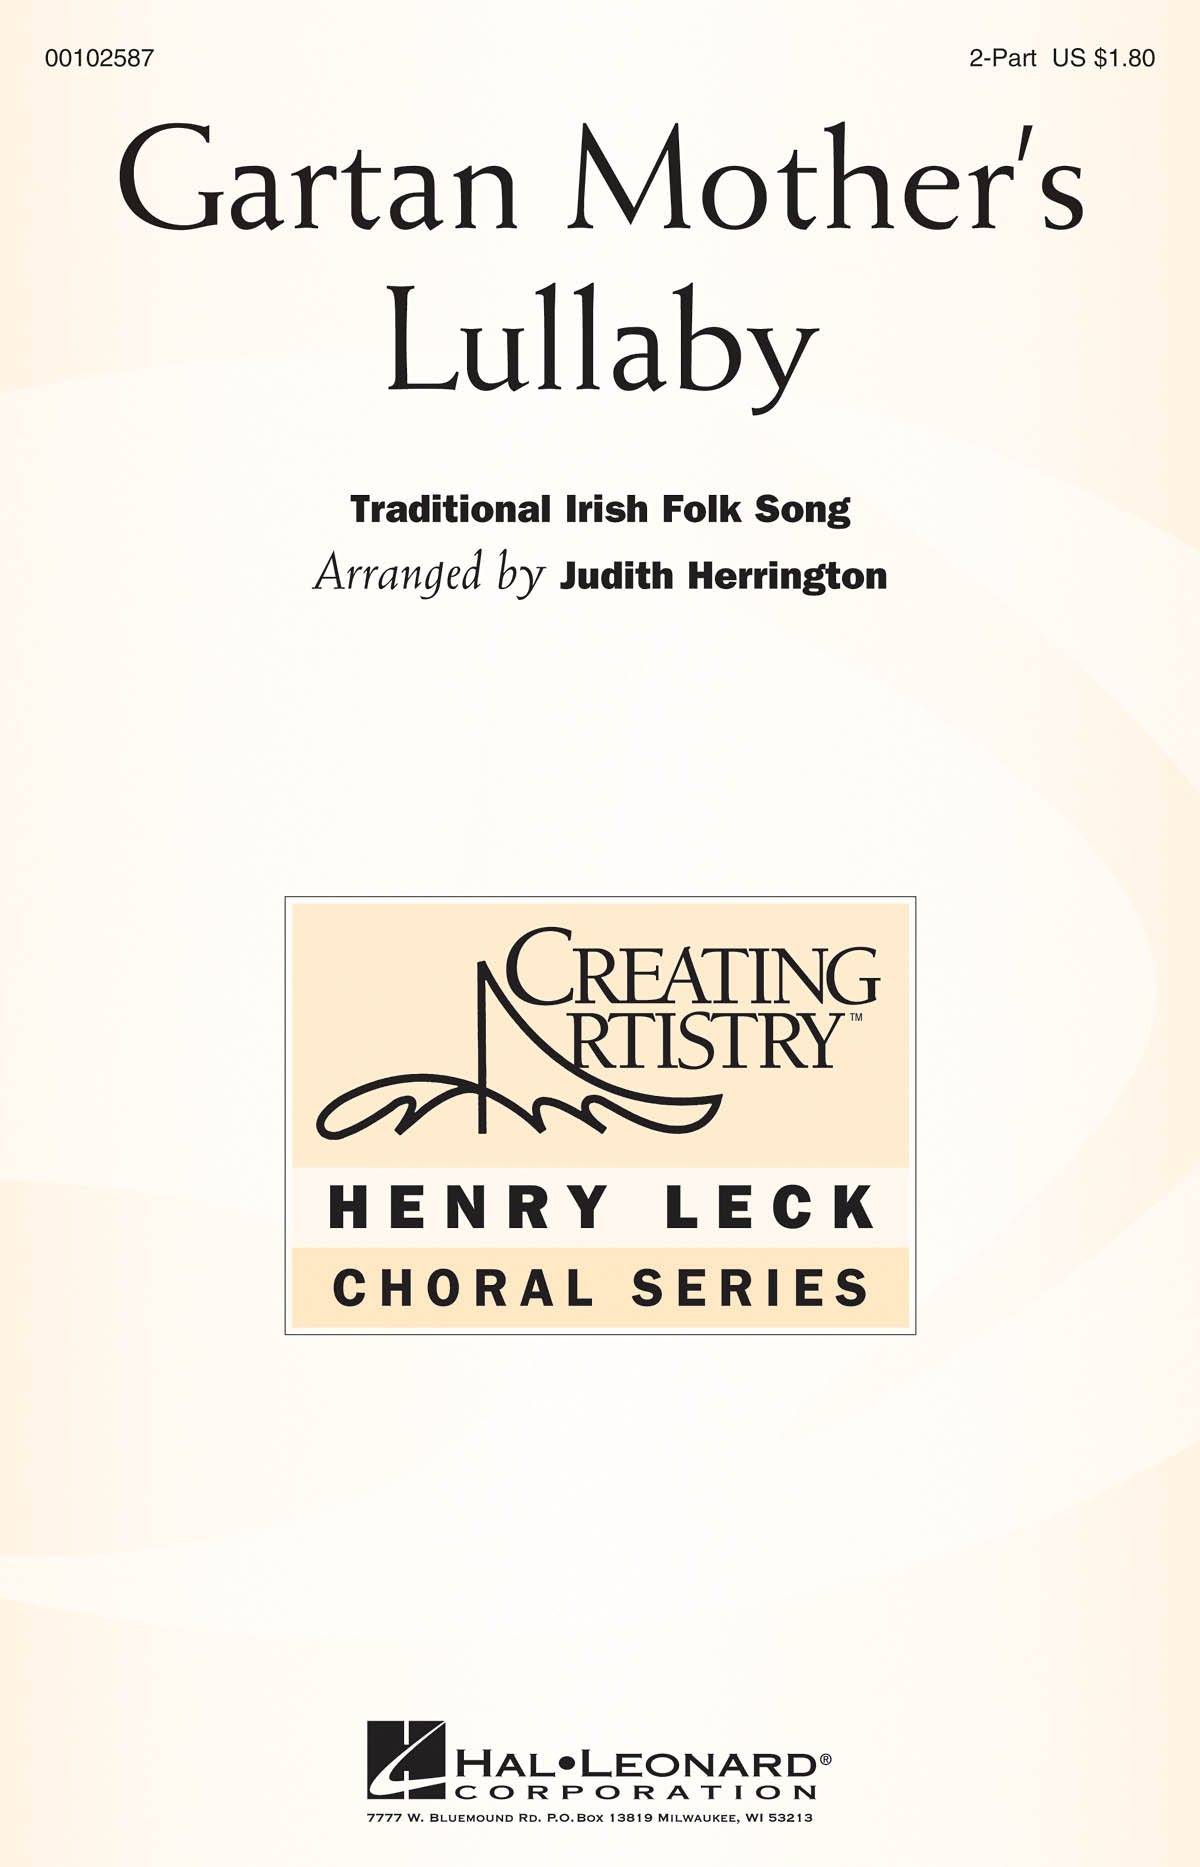 Gartan Mother's Lullaby: Mixed Choir a Cappella: Vocal Score